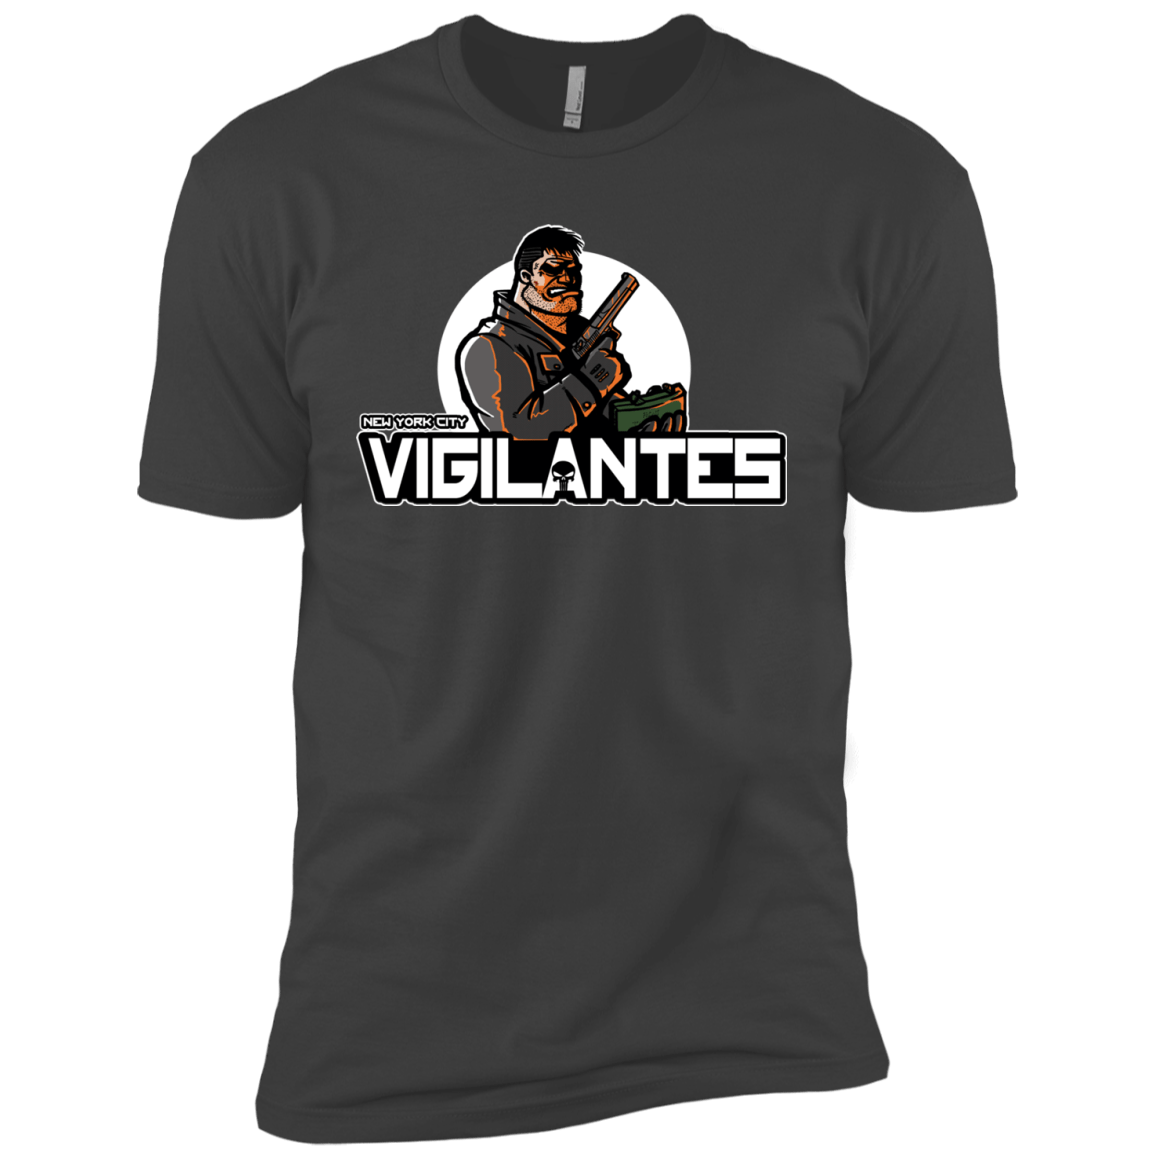 T-Shirts Heavy Metal / YXS NYC Vigilantes Boys Premium T-Shirt